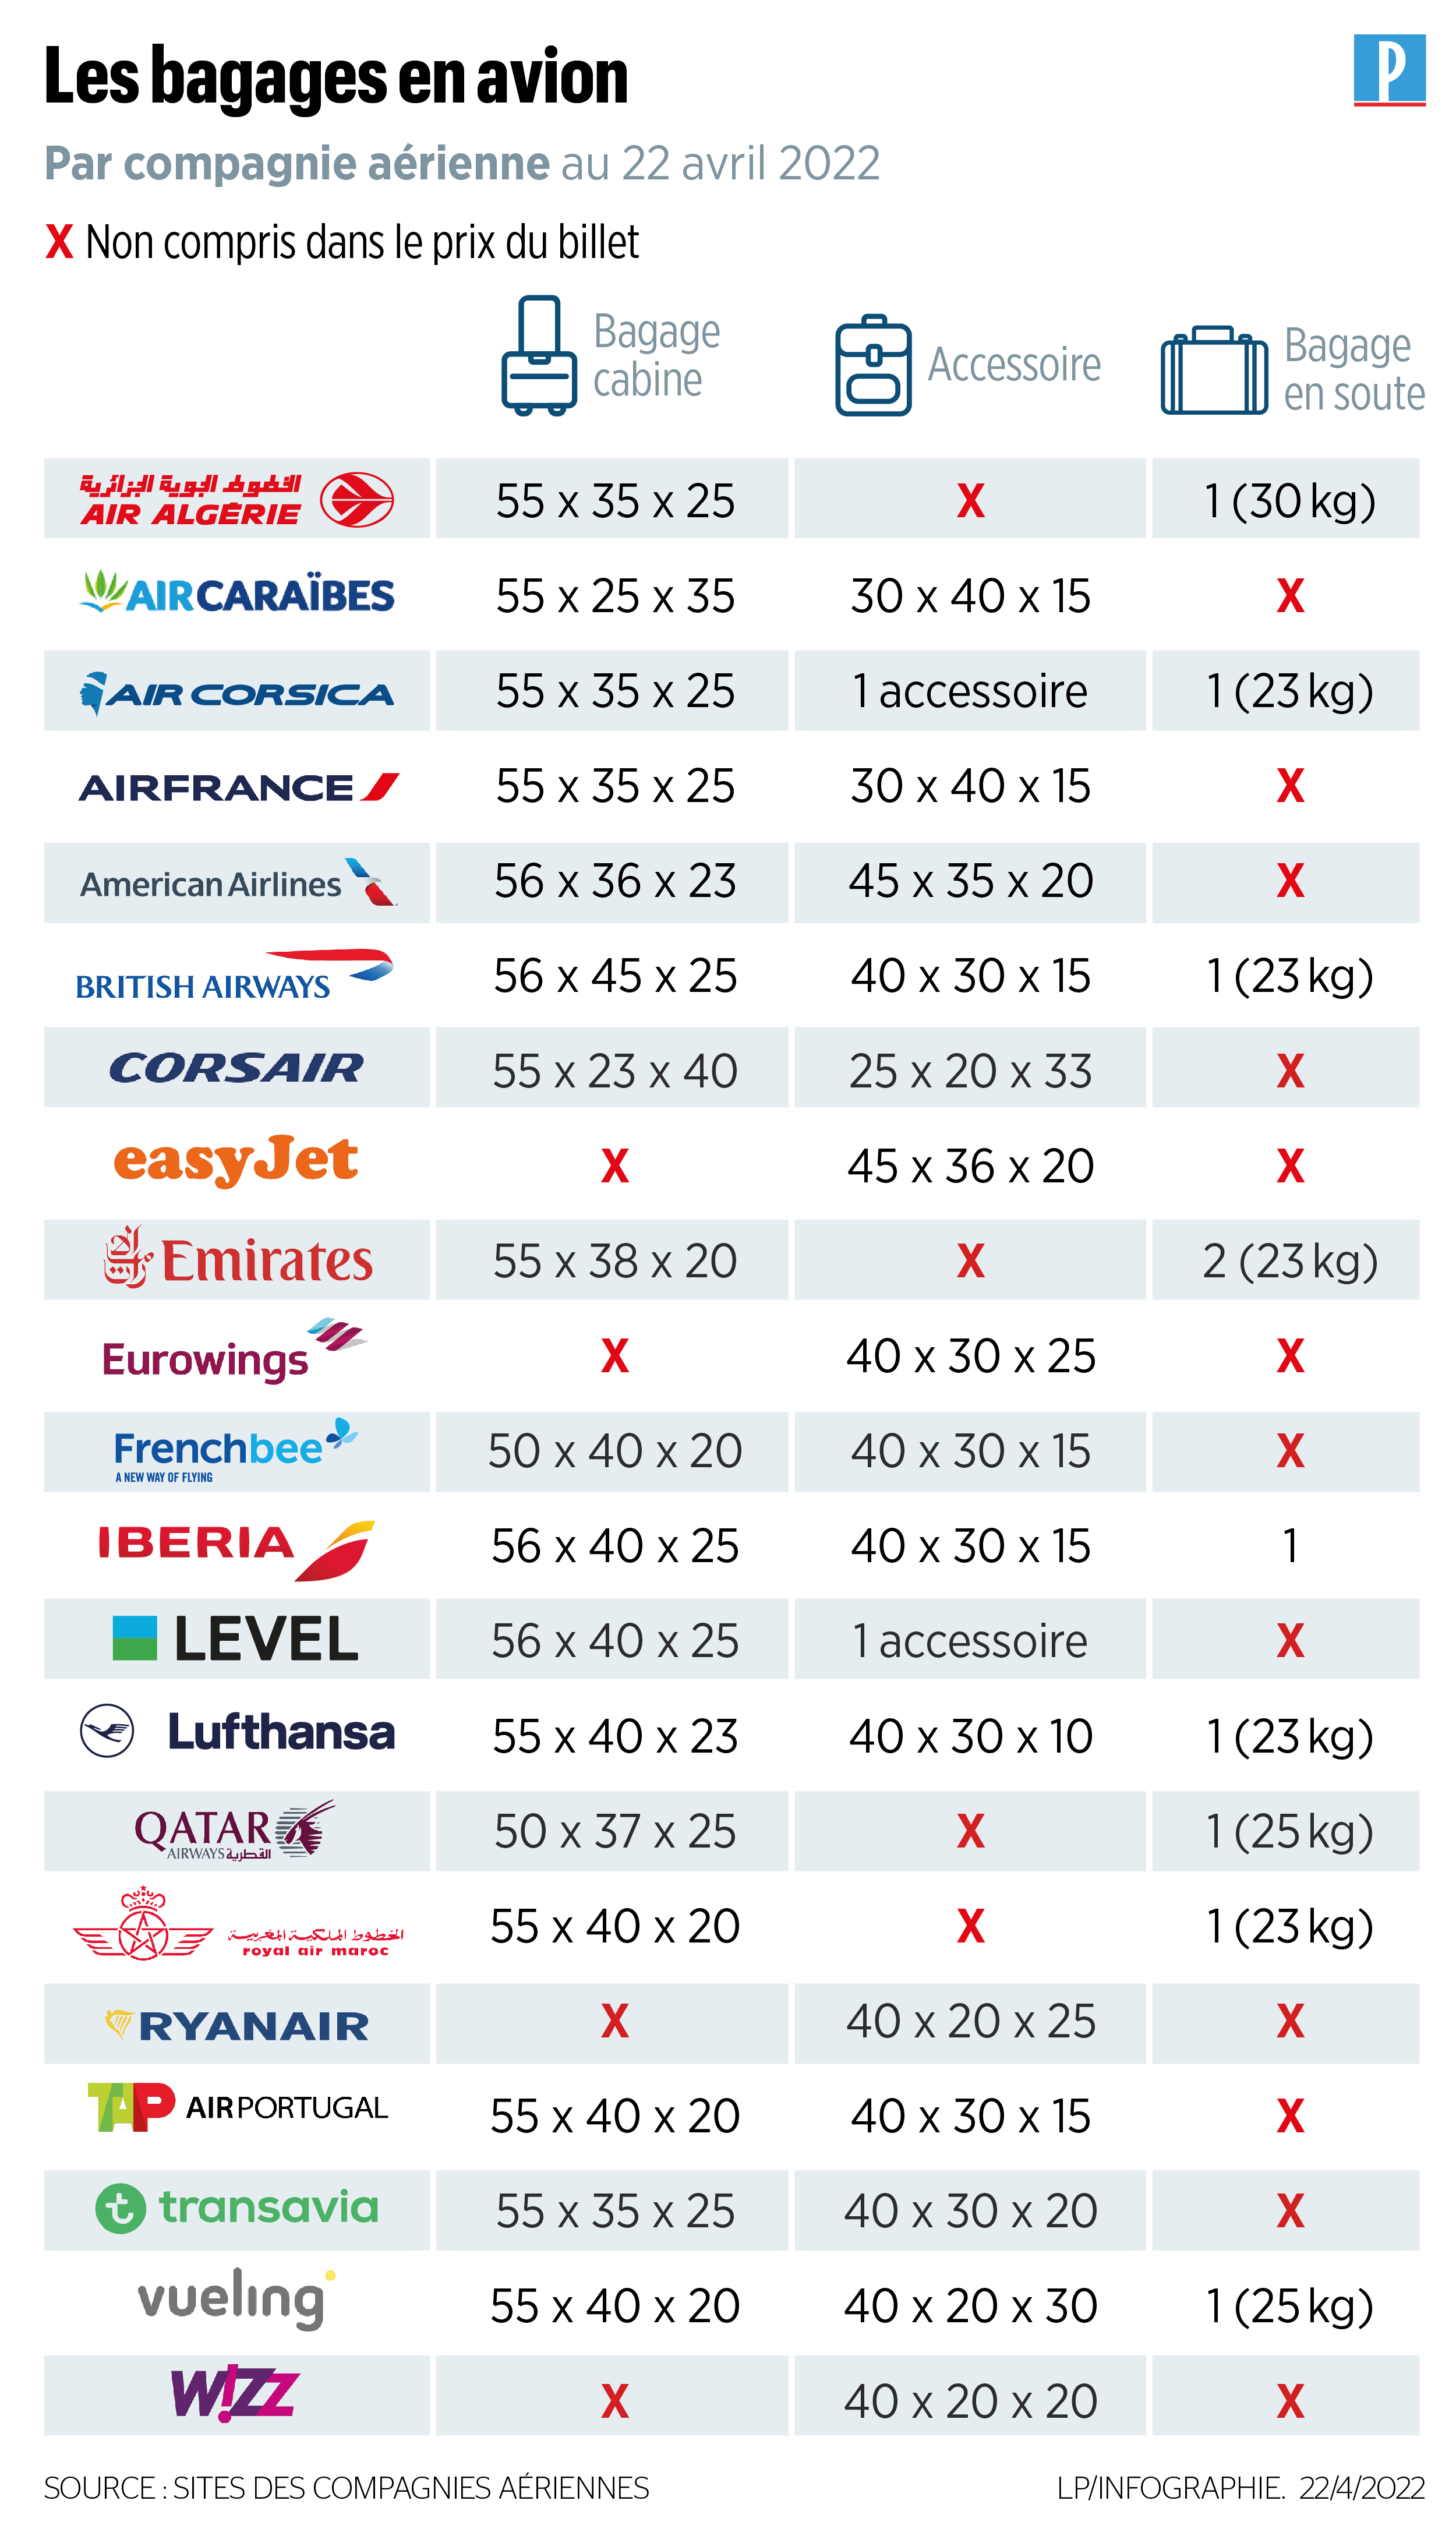 Soute, cabine, petits sacs comment les compagnies aériennes font monter  les prix des billets avec les bagages - Le Parisien